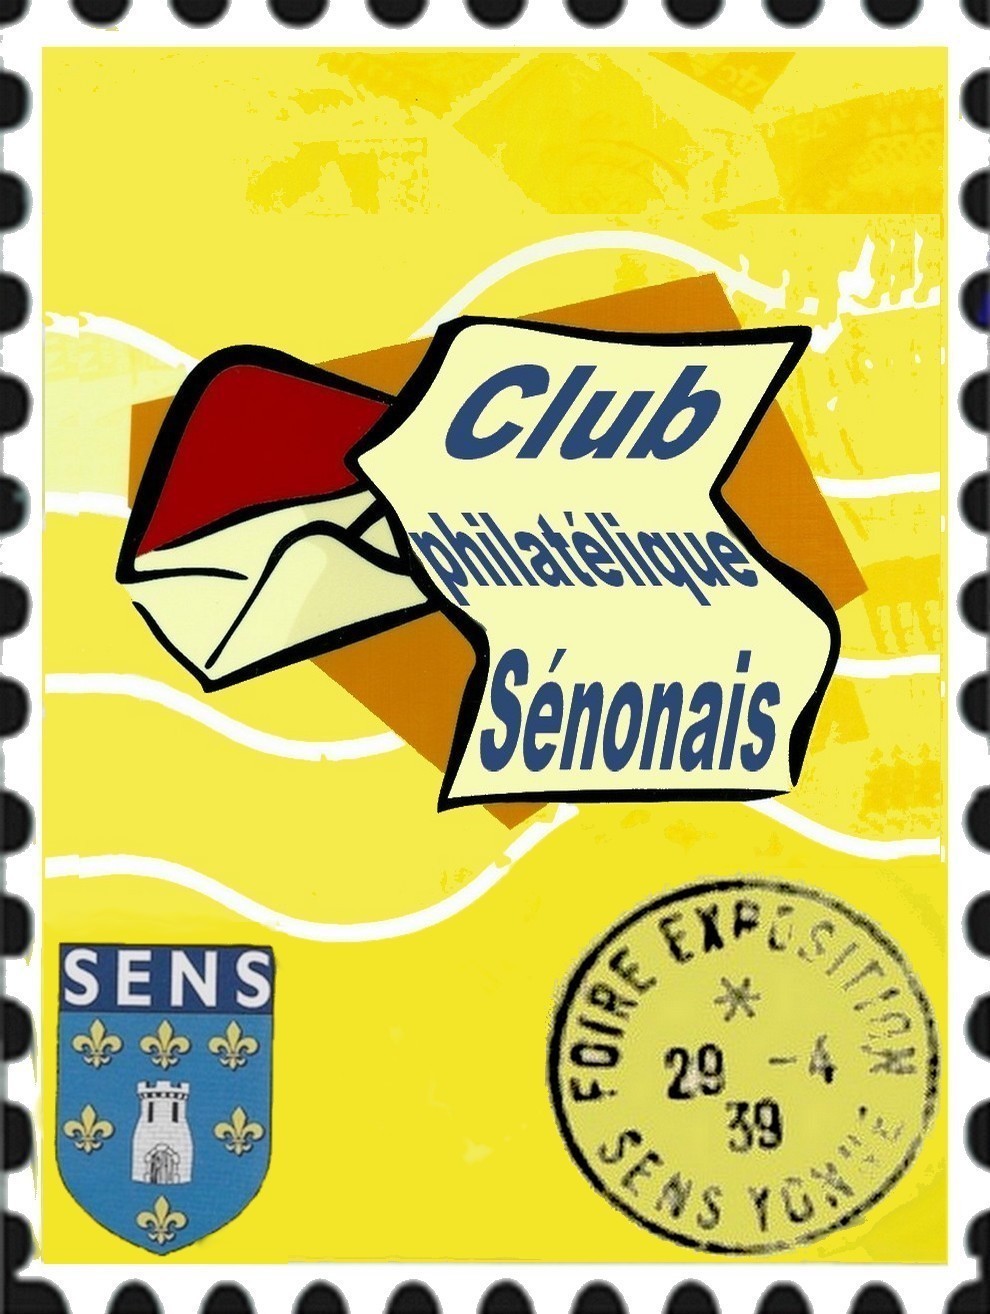 Club philatélique sénonais